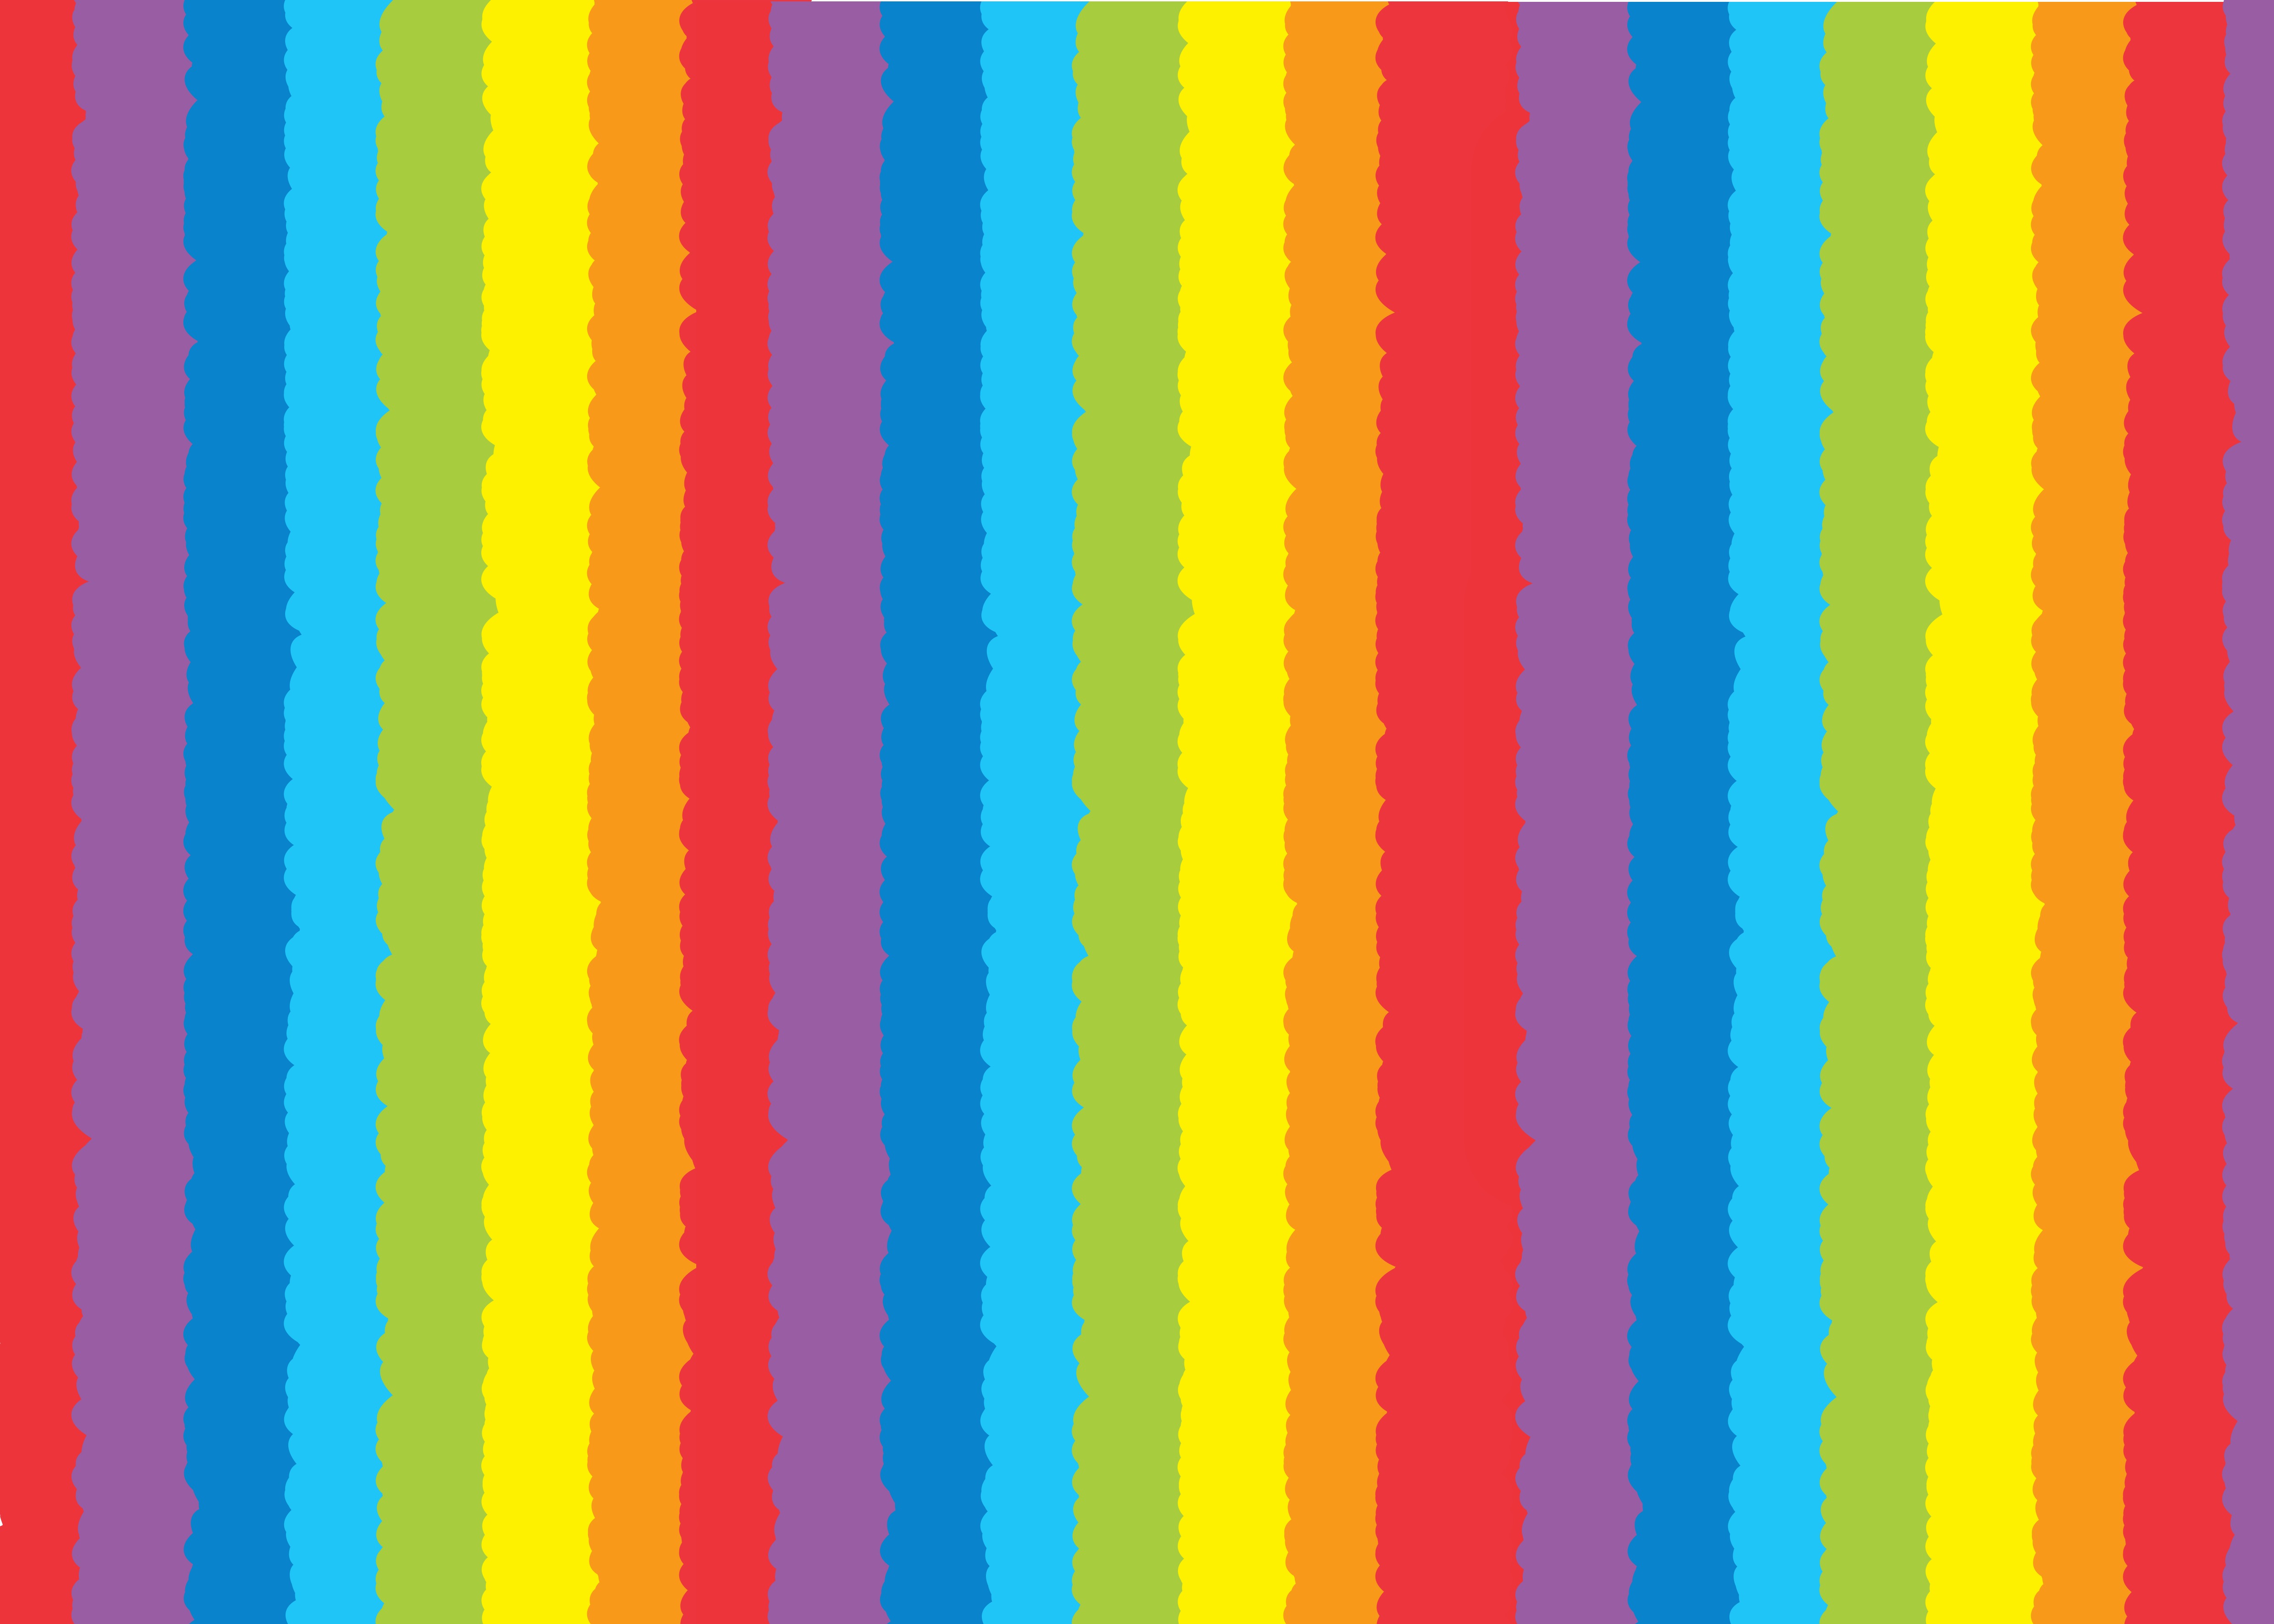 几个圆弧状彩虹条纹相互交错构成美丽的背景板背景花纹素材设计